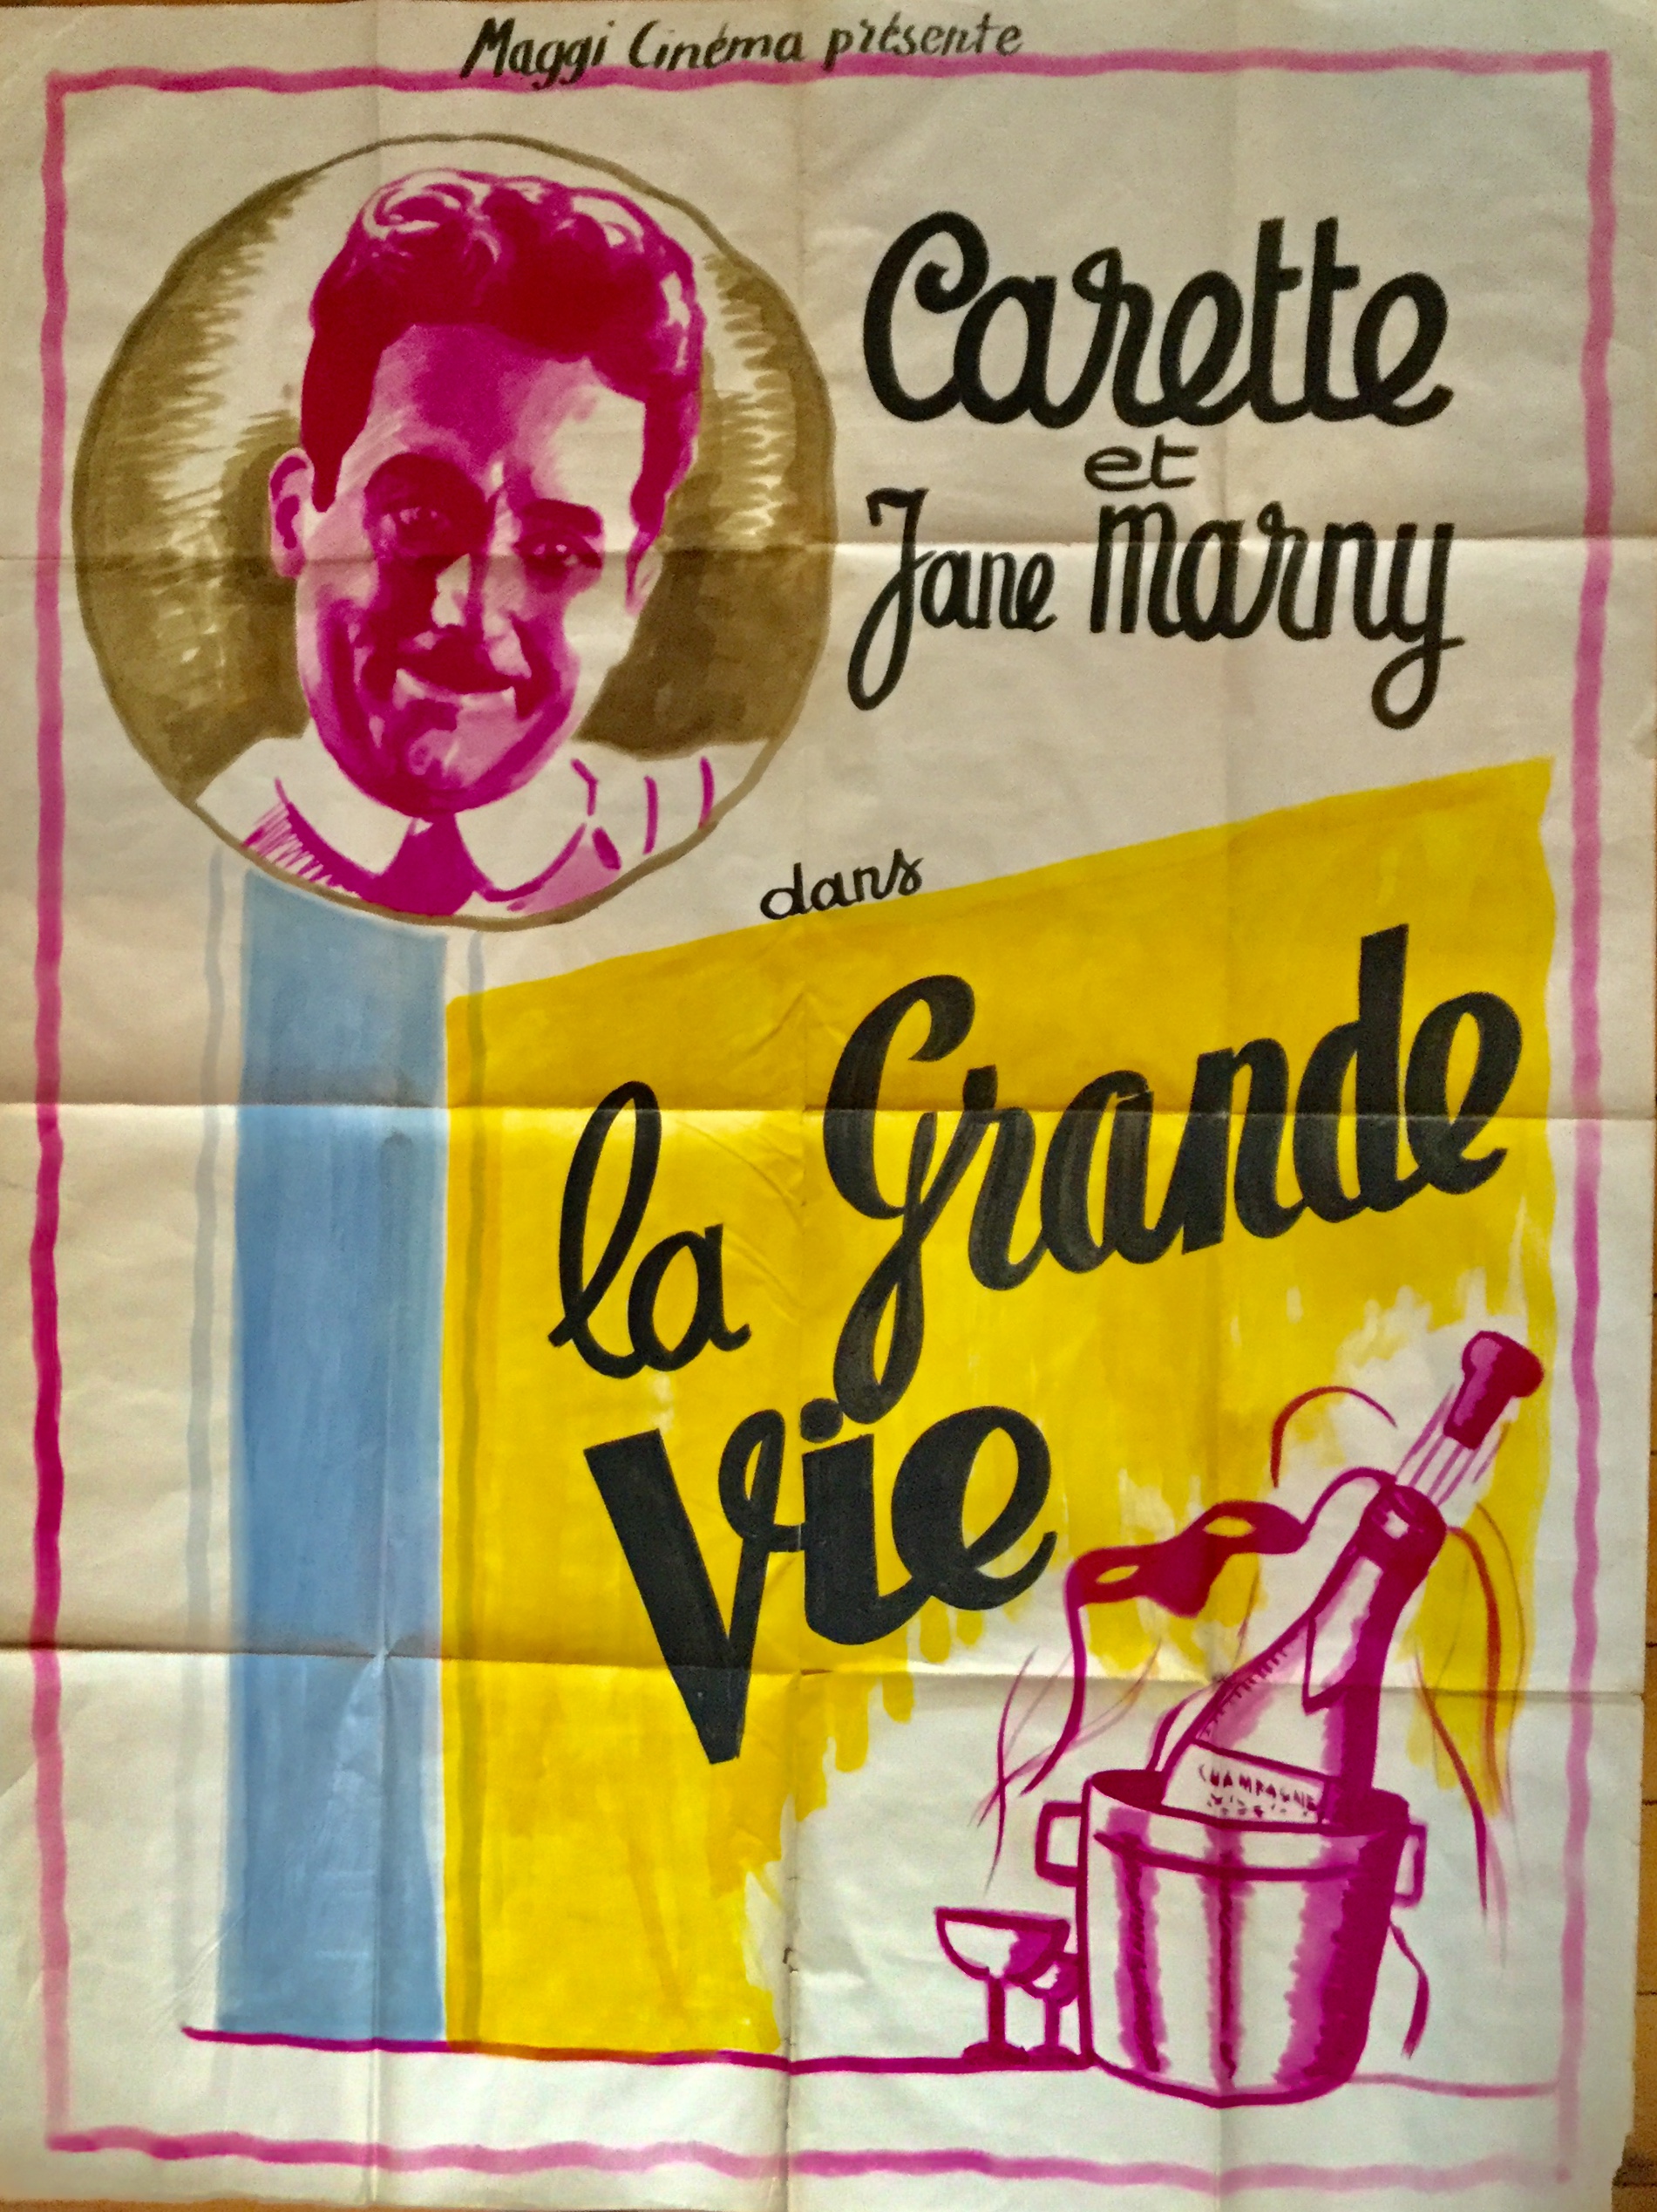 J491	“(LA GRANDE VIE - THE GREAT LIFE)” ORIGINAL MAQUETTE FOR A FRENCH MOVIE POSTER CA. 1935